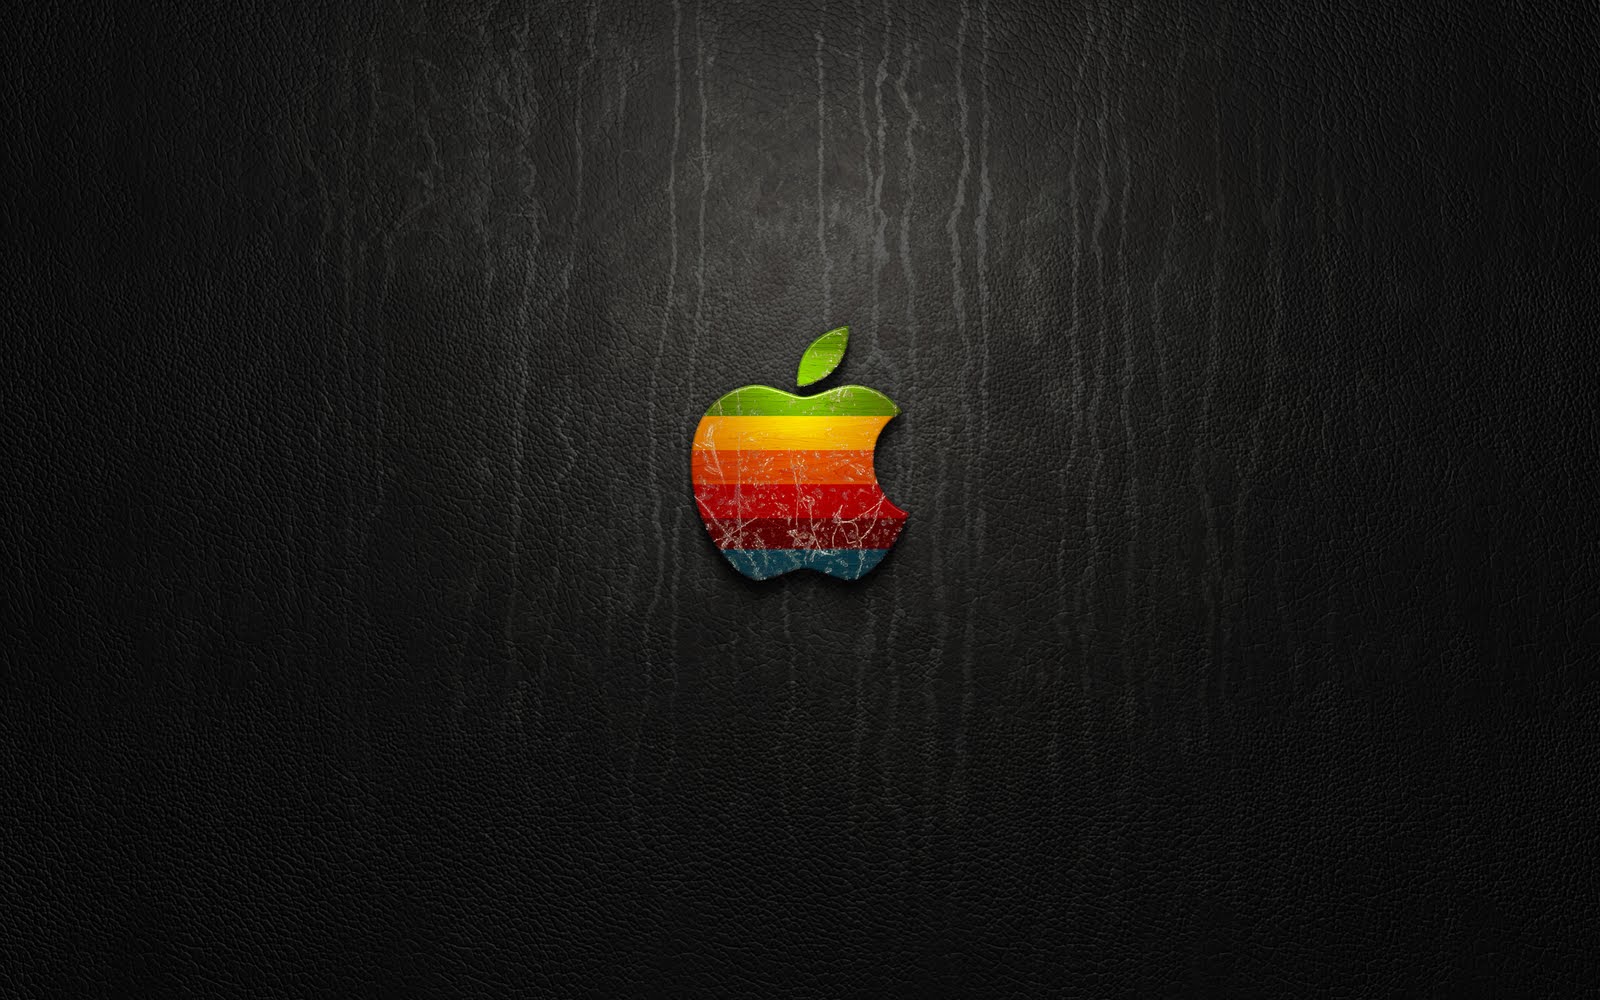 Ipad Wallpapers Hd Apple Logo